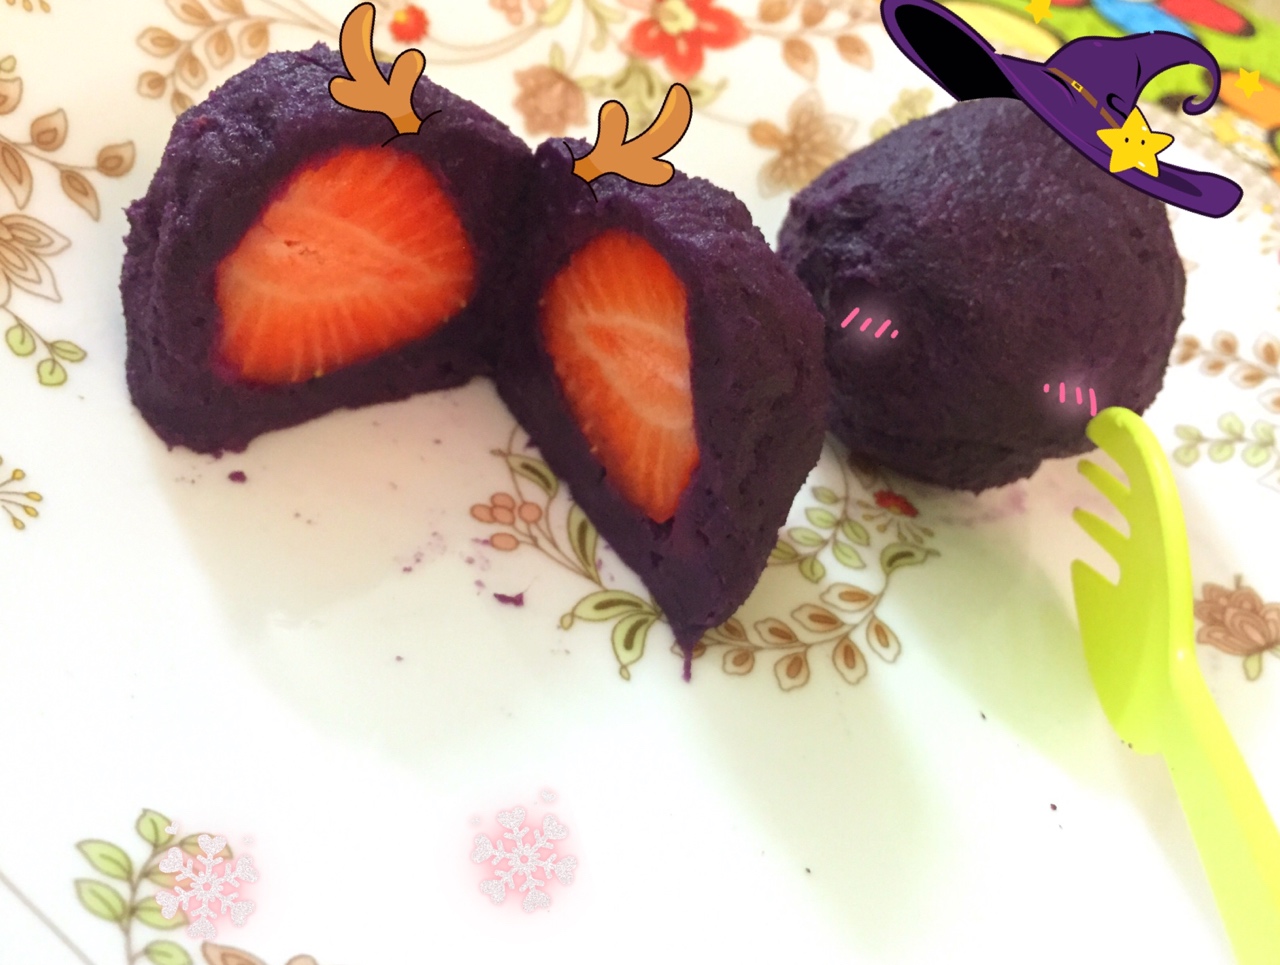 紫薯草莓球--懒人的轻食甜品